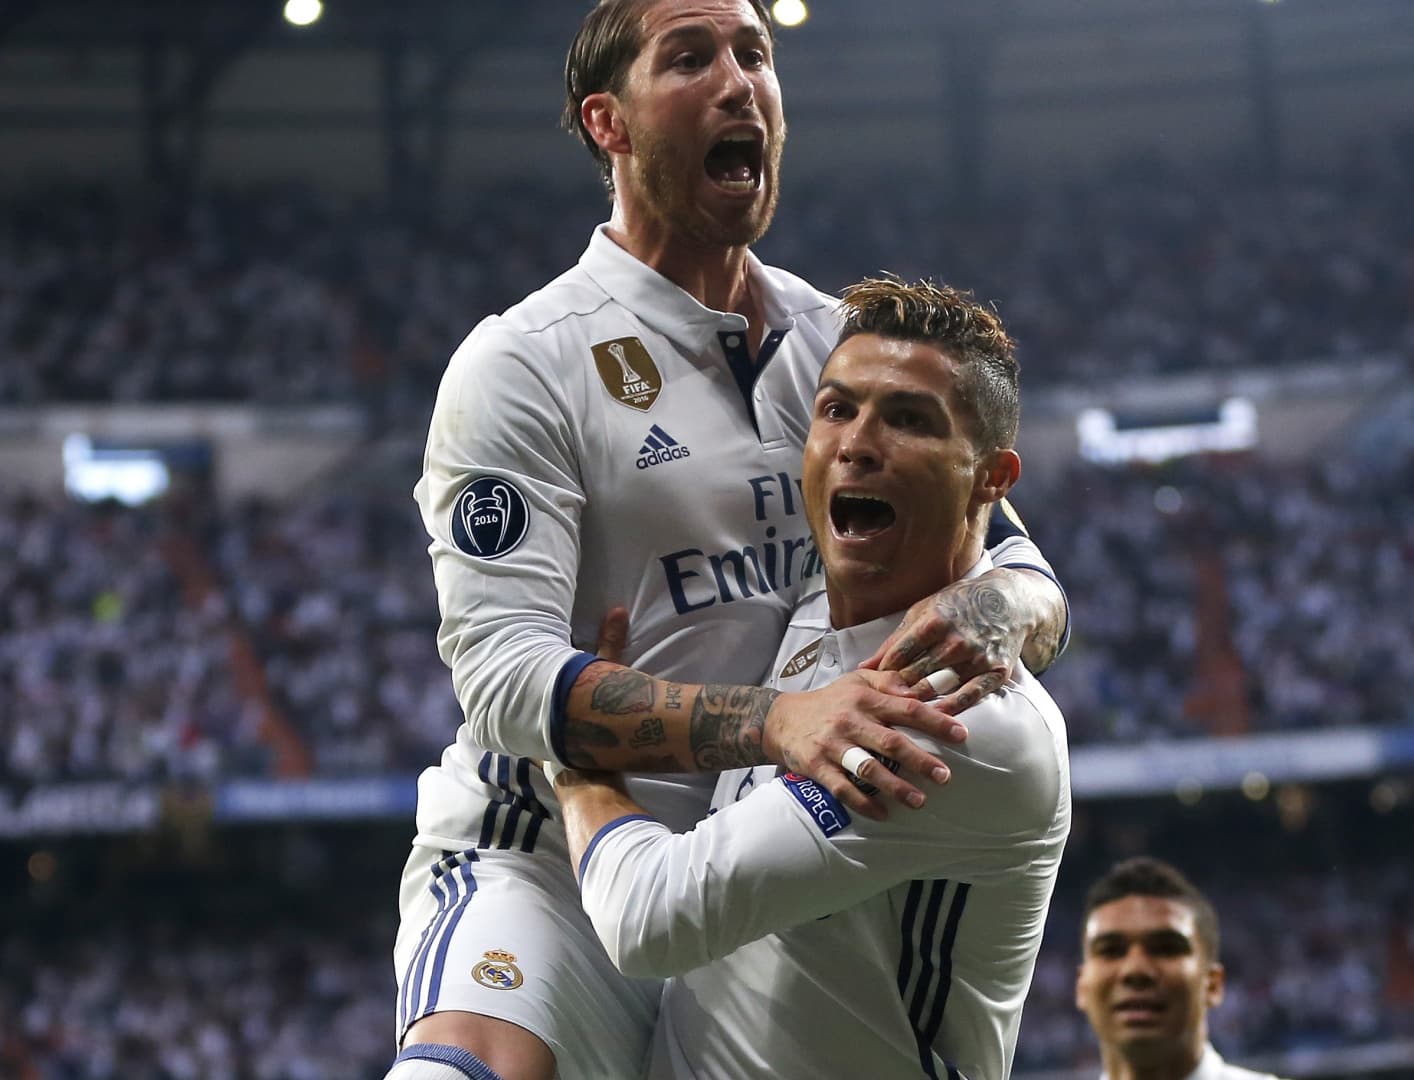 Bajnokok Ligája: Ronaldo mesterhármasával szerzett háromgólos előnyt a Real